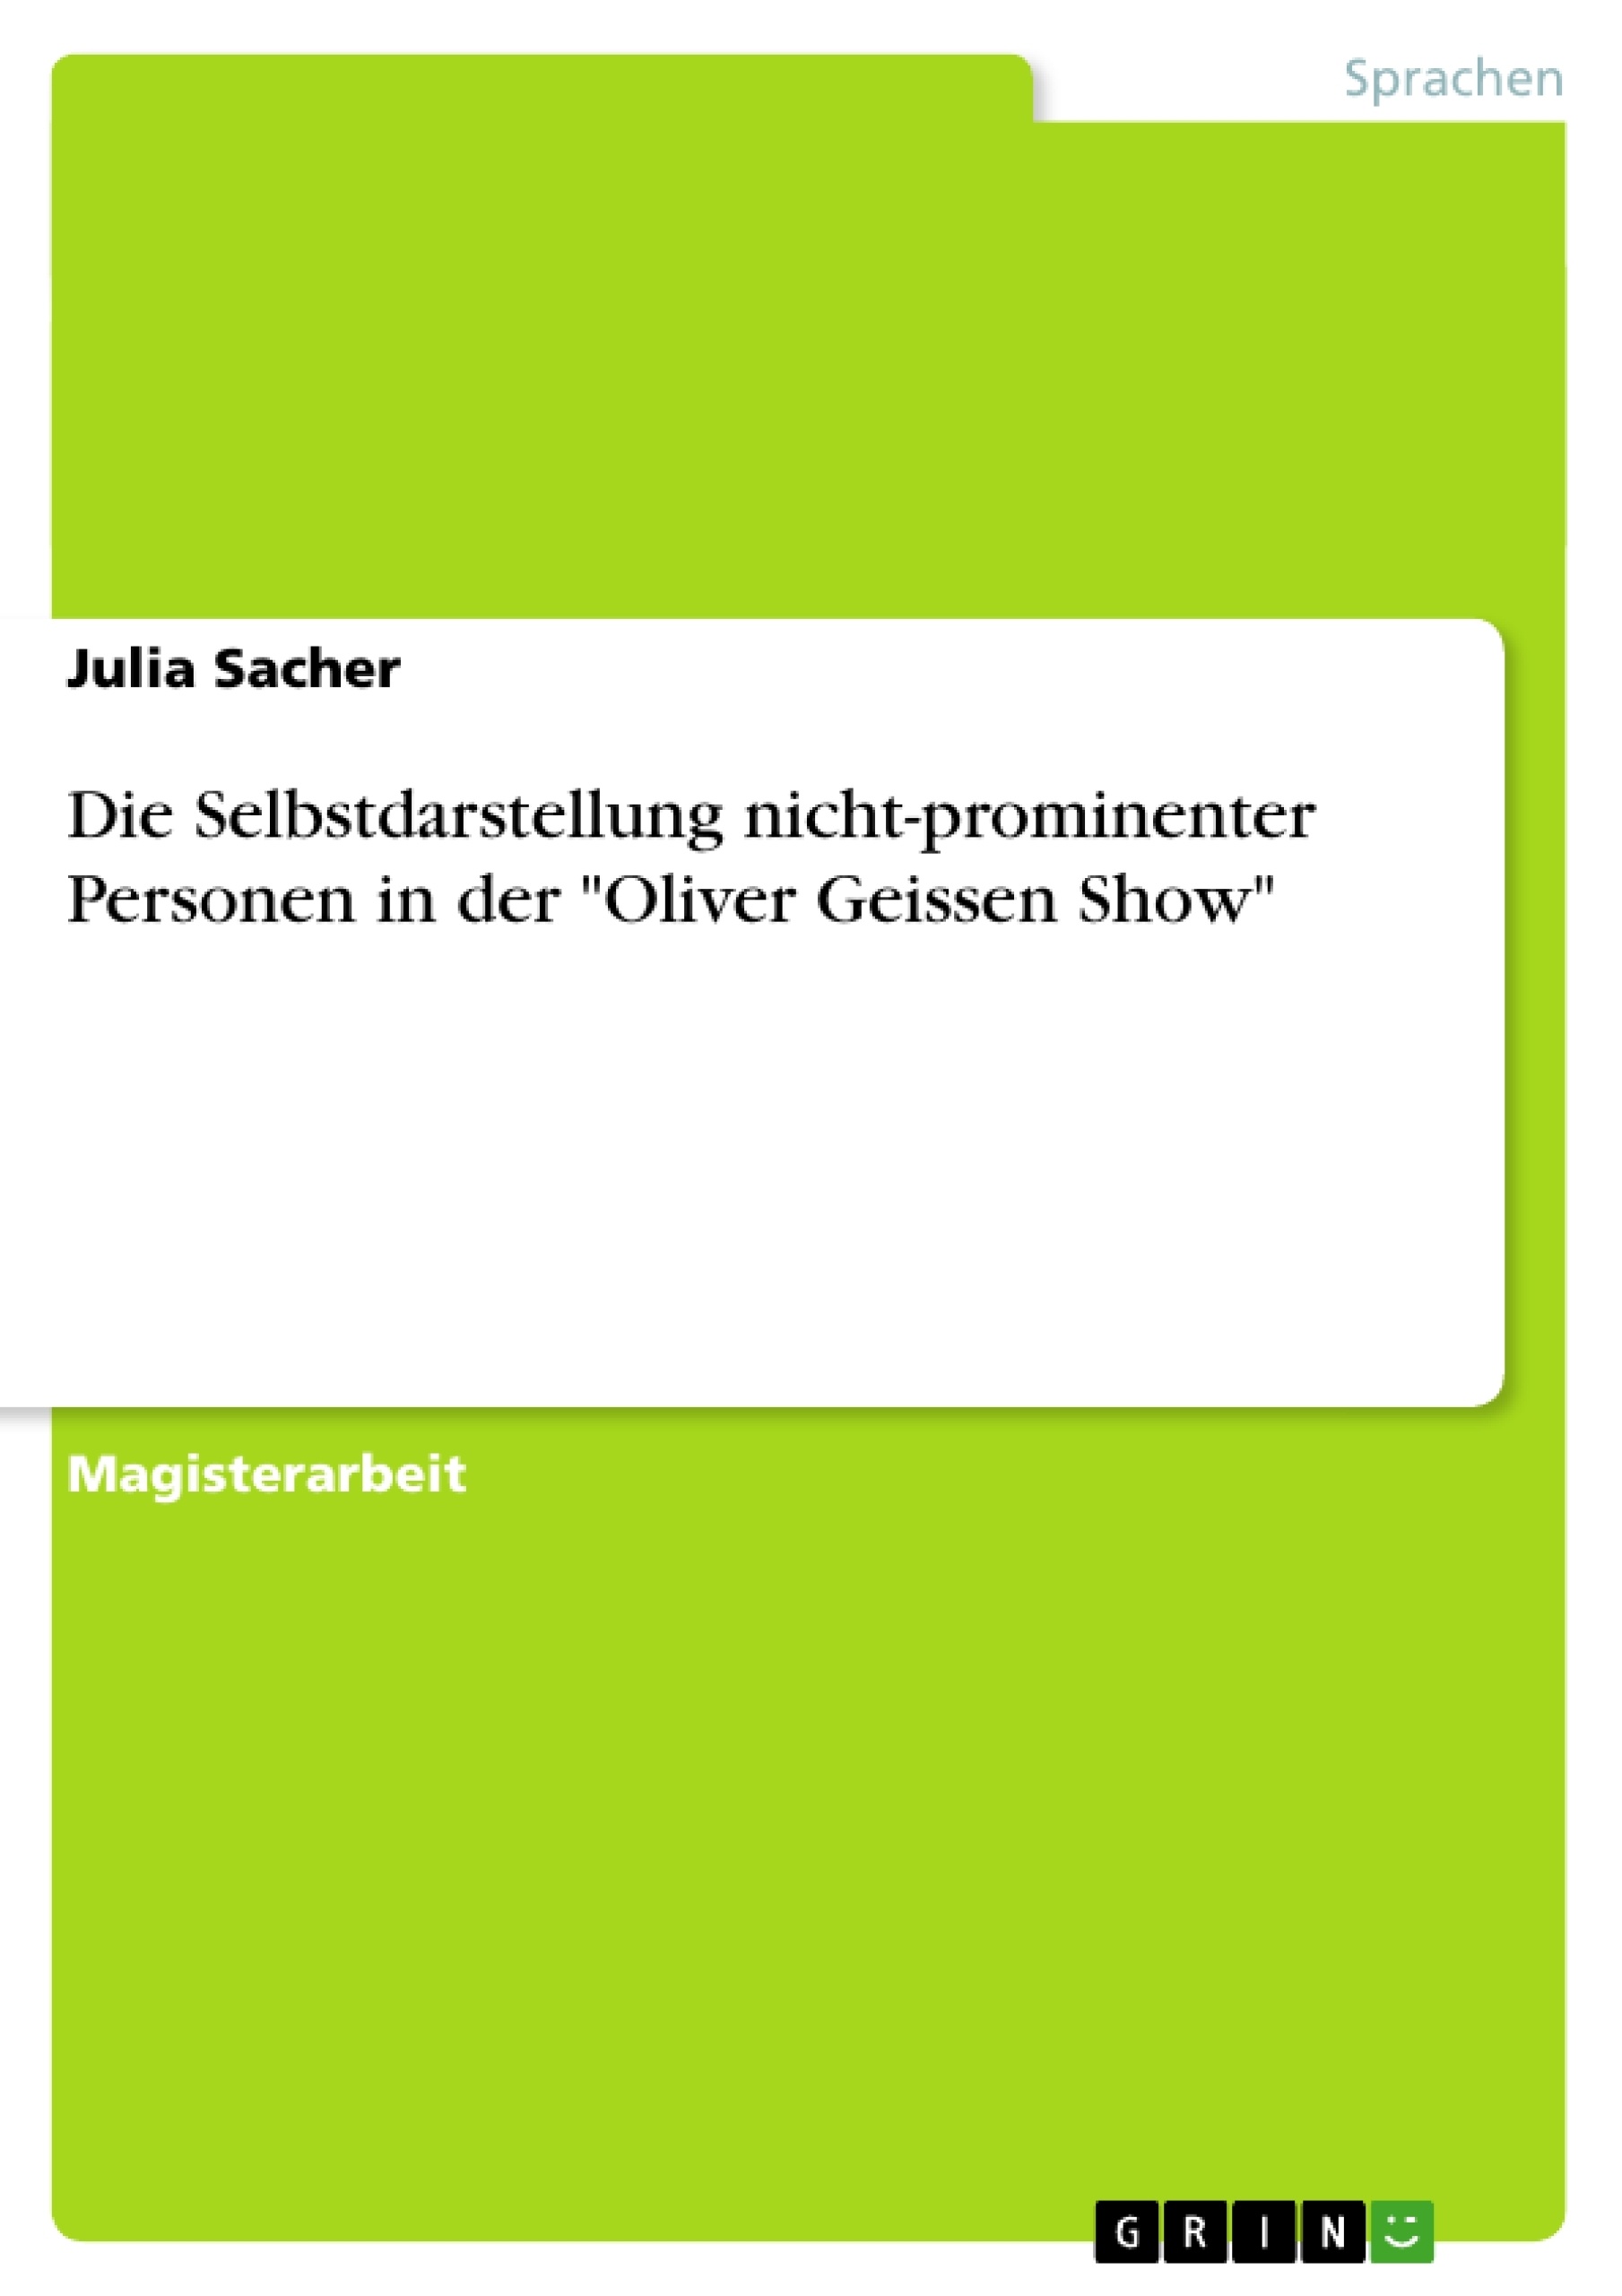 Título: Die Selbstdarstellung nicht-prominenter Personen in der "Oliver Geissen Show"